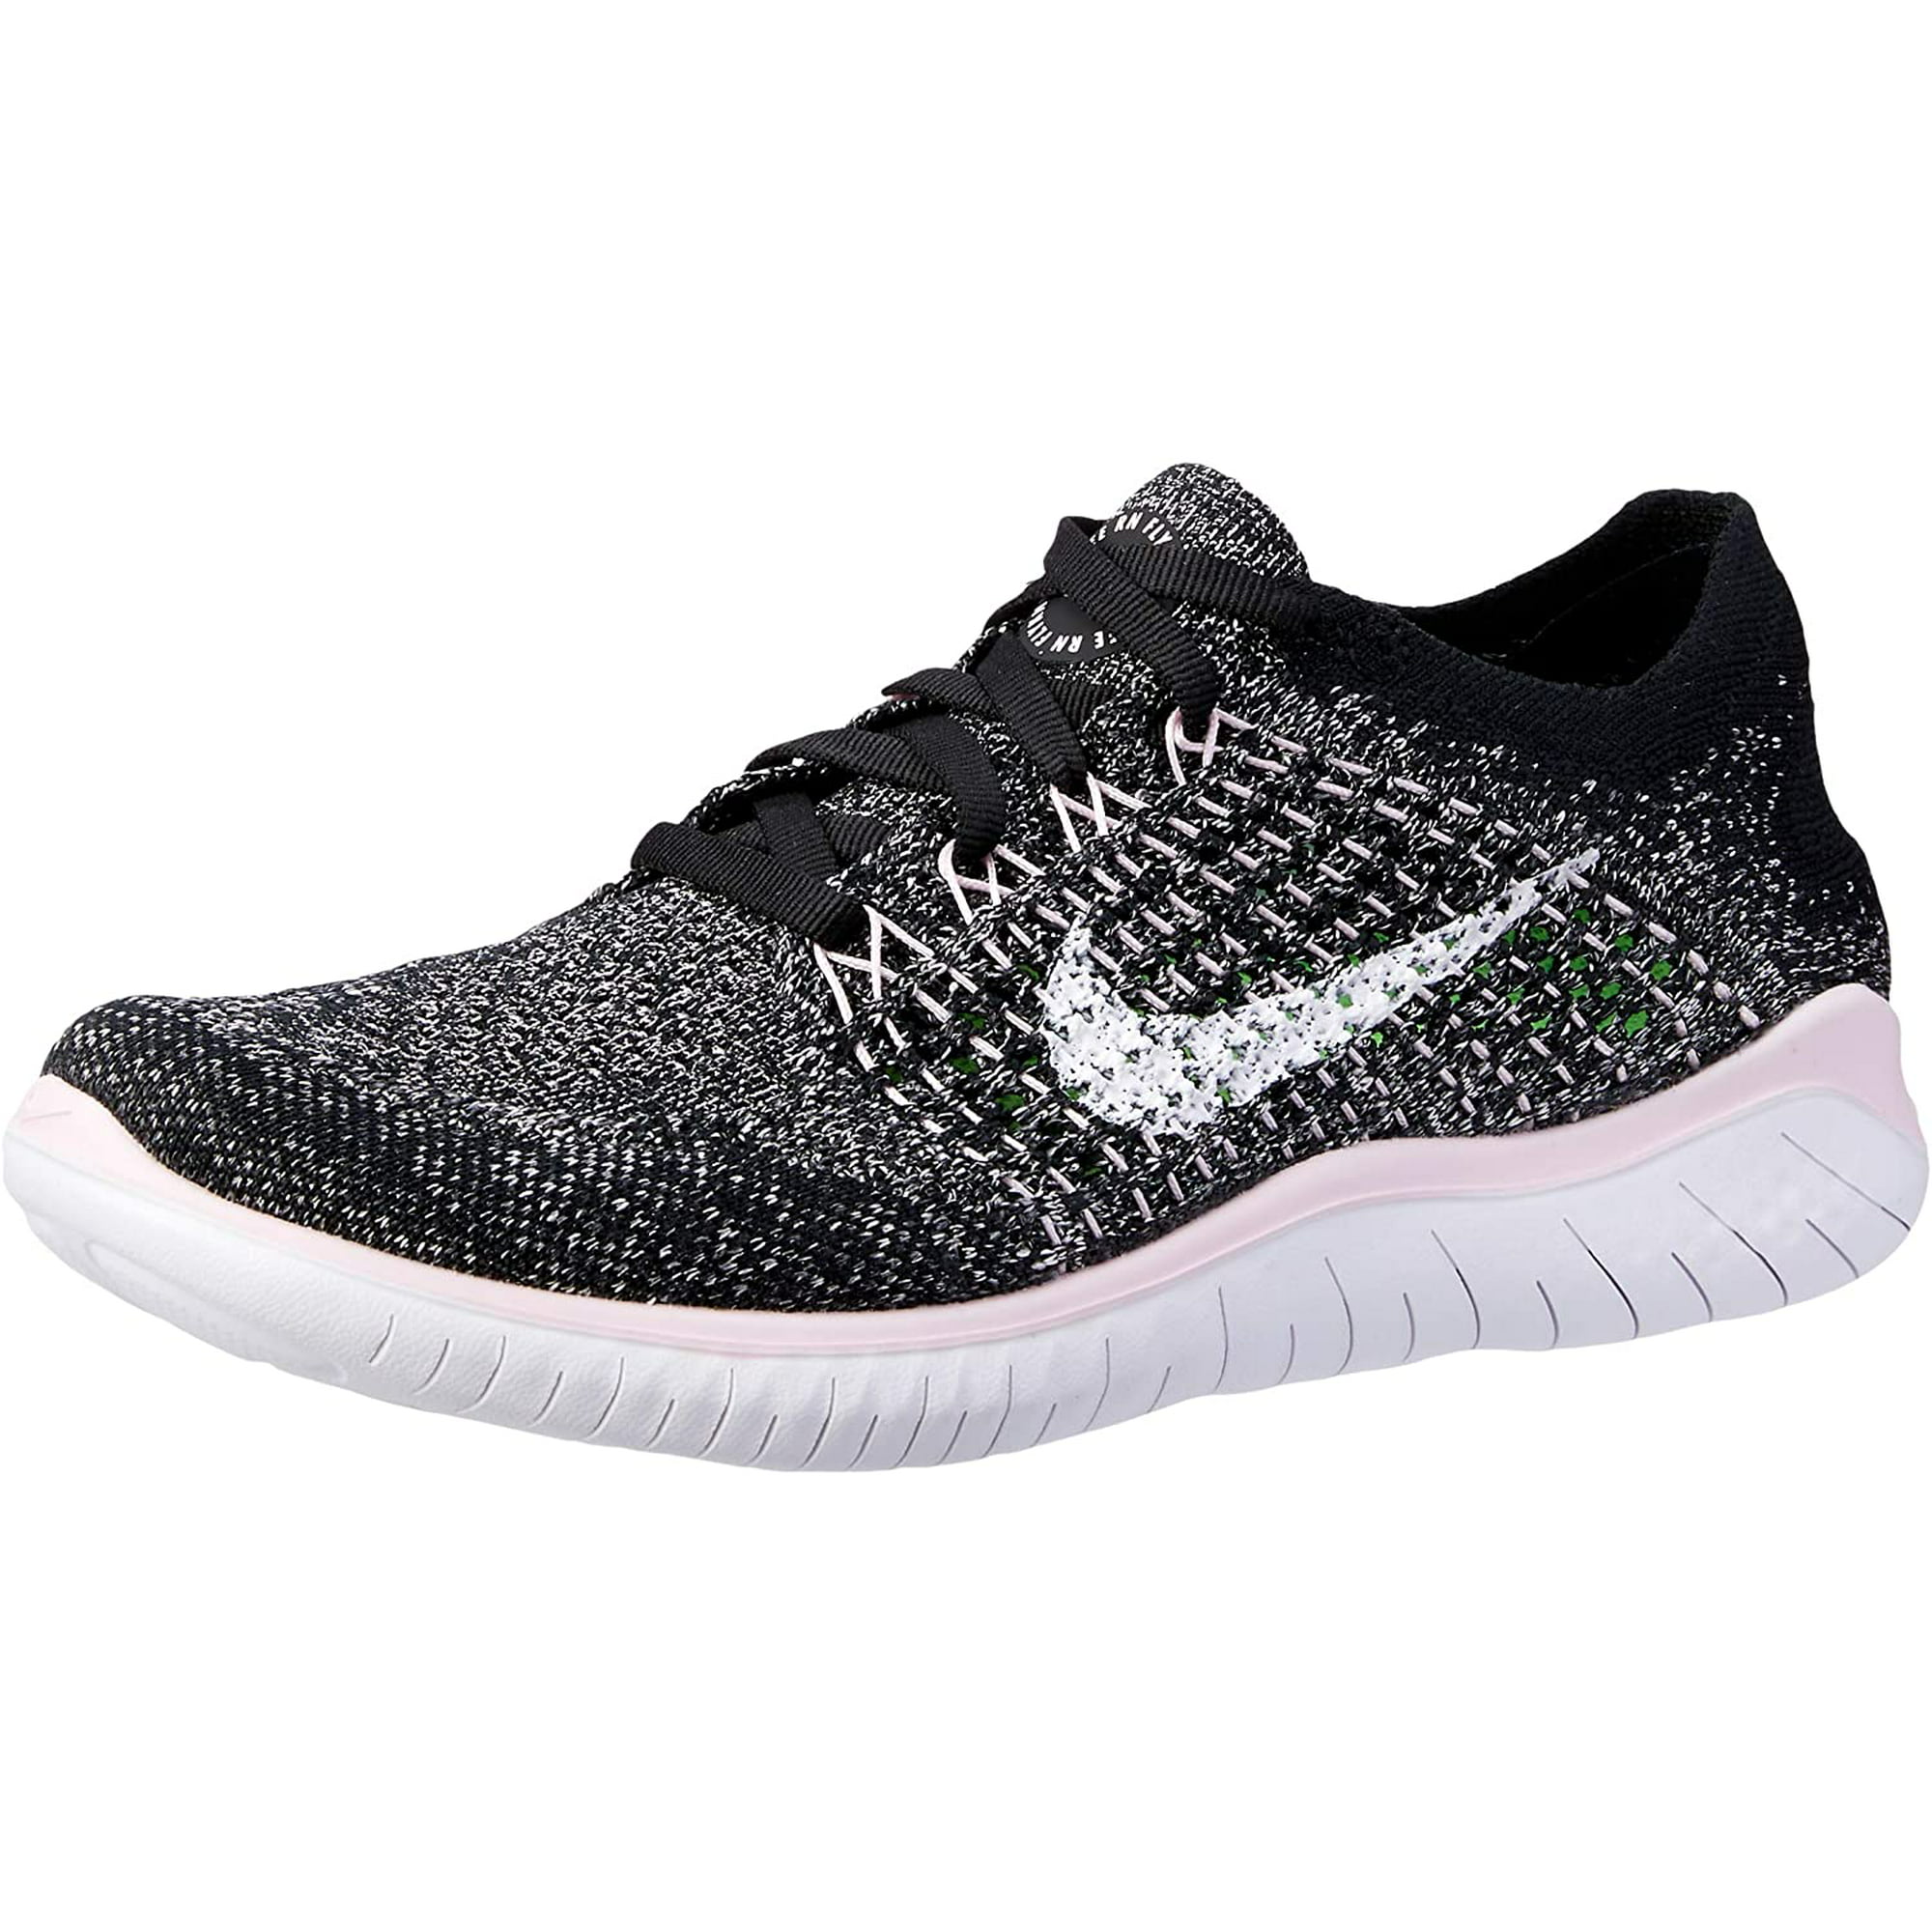 Nike Free RN Flyknit Running Shoe Black/White-Pink Foam 8.0 Walmart